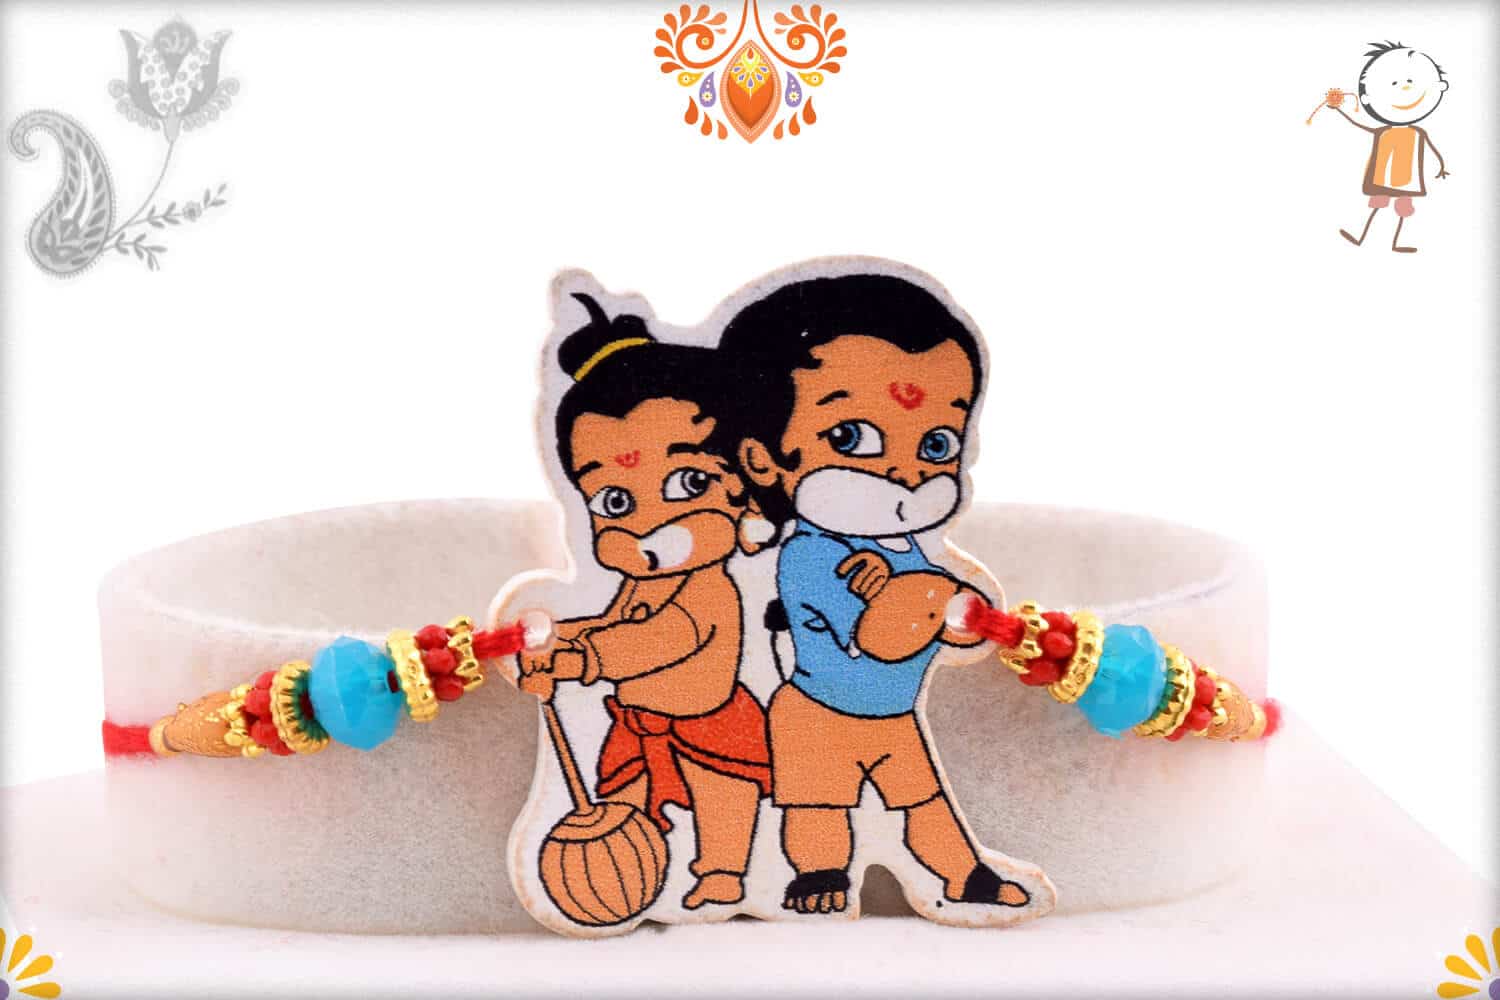 Bal Hanuman Kids Rakhi with Blue Beads | Send Rakhi Gifts Online ...